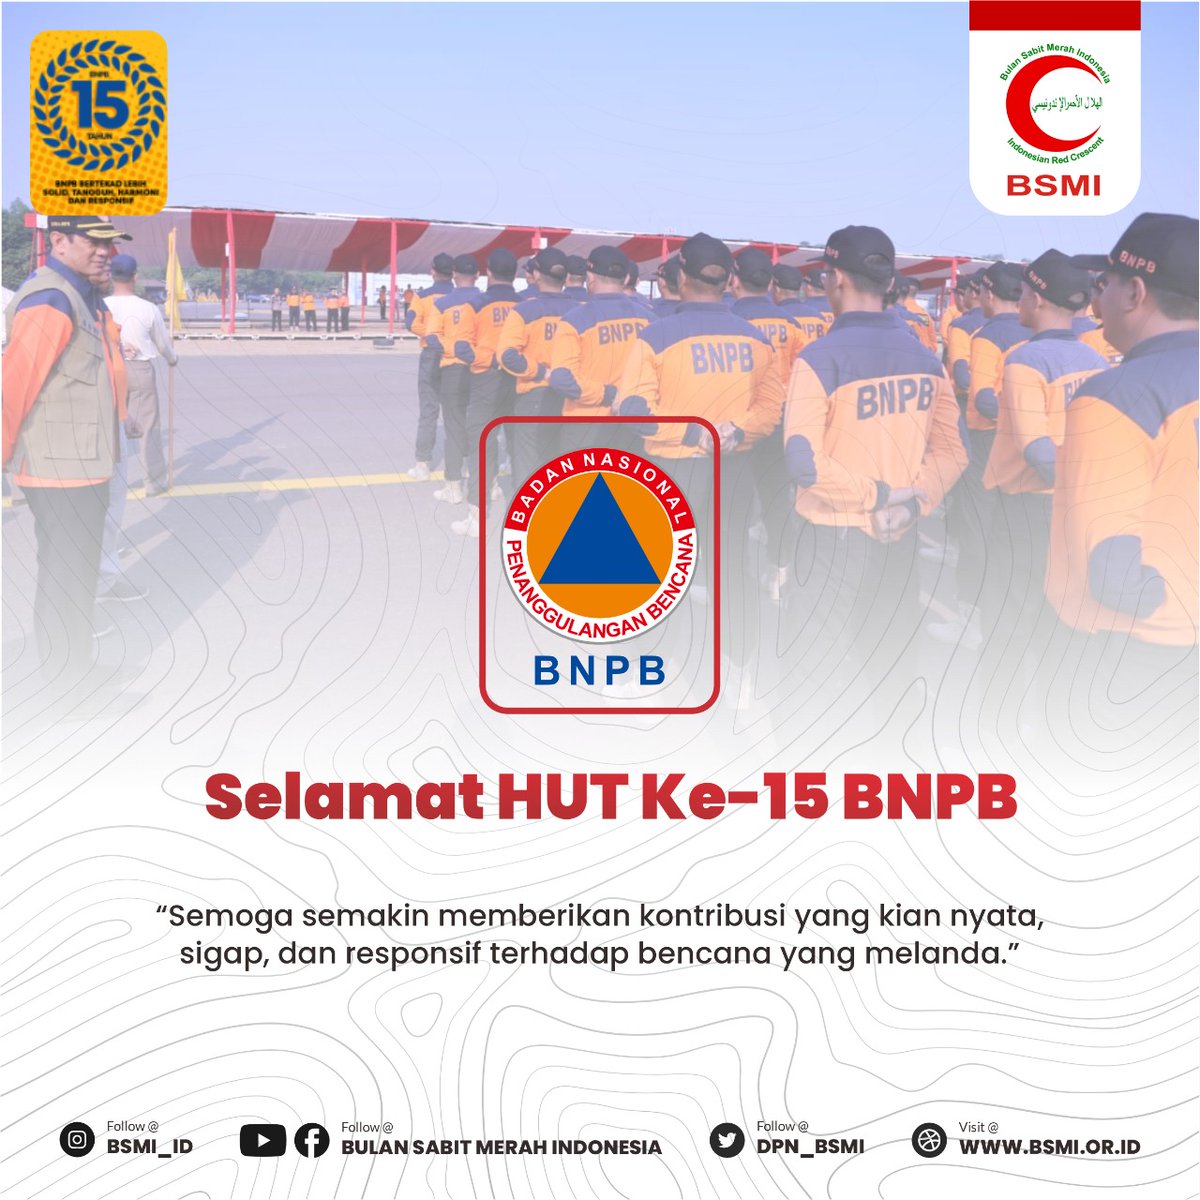 Selamat HUT ke-15 @BNPB_Indonesia 

Semakin tangguh mengawal kesiapsiagaan seluruh elemen dalam  menghadapi bencana.

#hutbnpb #hut15bnpb #bnpb #bulansabitmerahindonesia